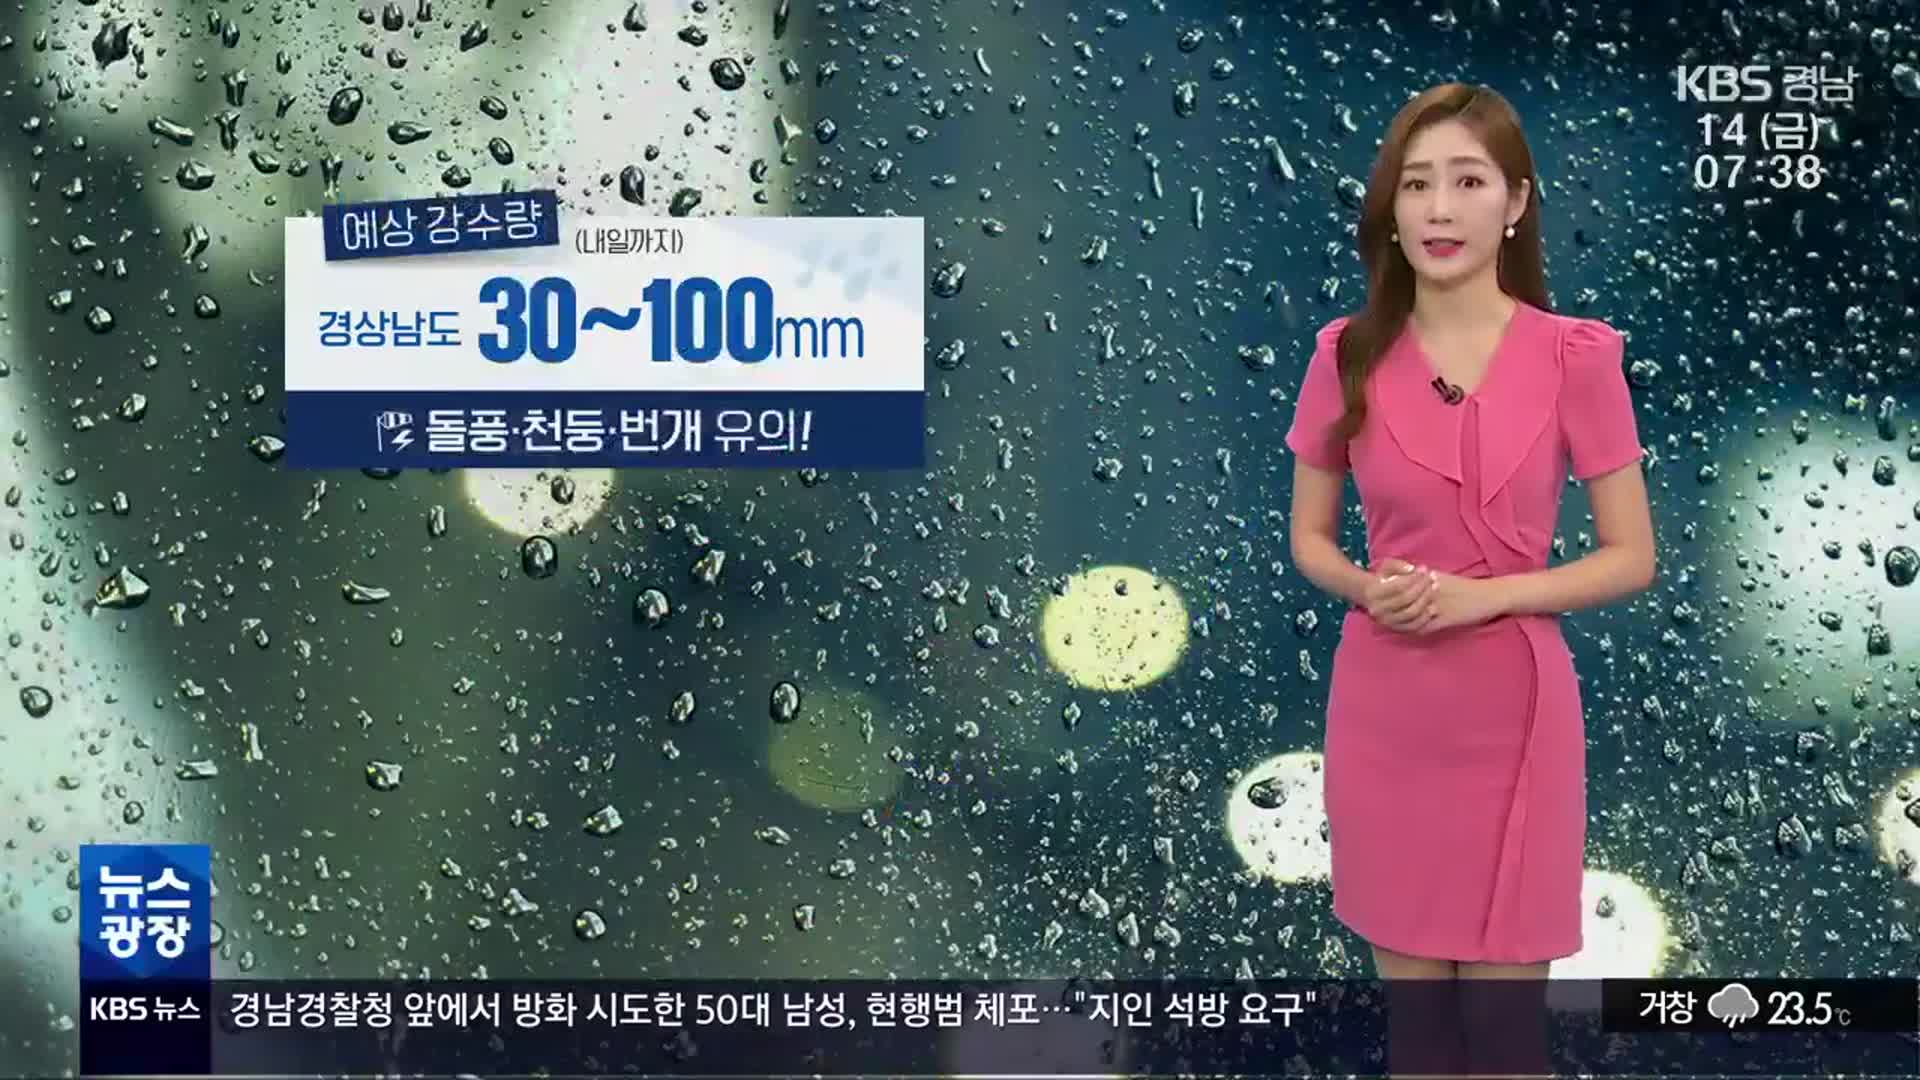 [날씨] 경남 곳곳 호우특보 발효 중…돌풍·천둥·번개 주의